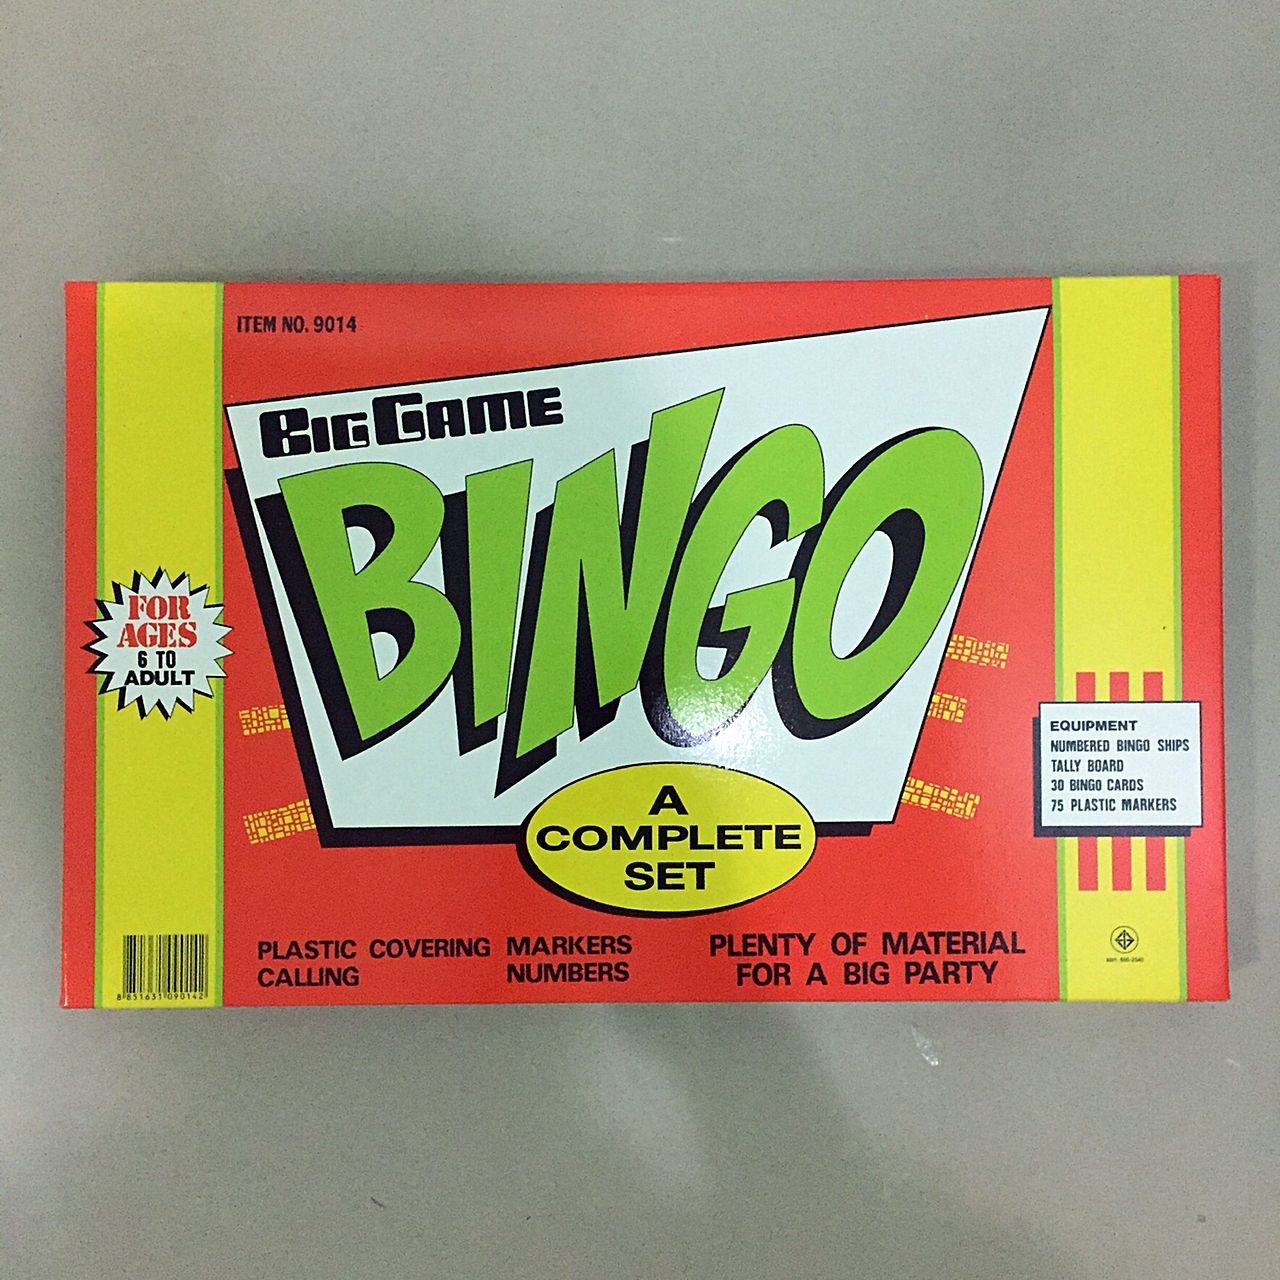 บิงโก ชุดใหญ่ บิงโก ขนาดใหญ่ 30 บิงโกการ์ด ของเล่น เสริมทักษะ ของเล่น เด็กโต ของเล่น  พกพา  เล่นได้หลายคน ของเล่น ครอบครัว  Bingo Big Game